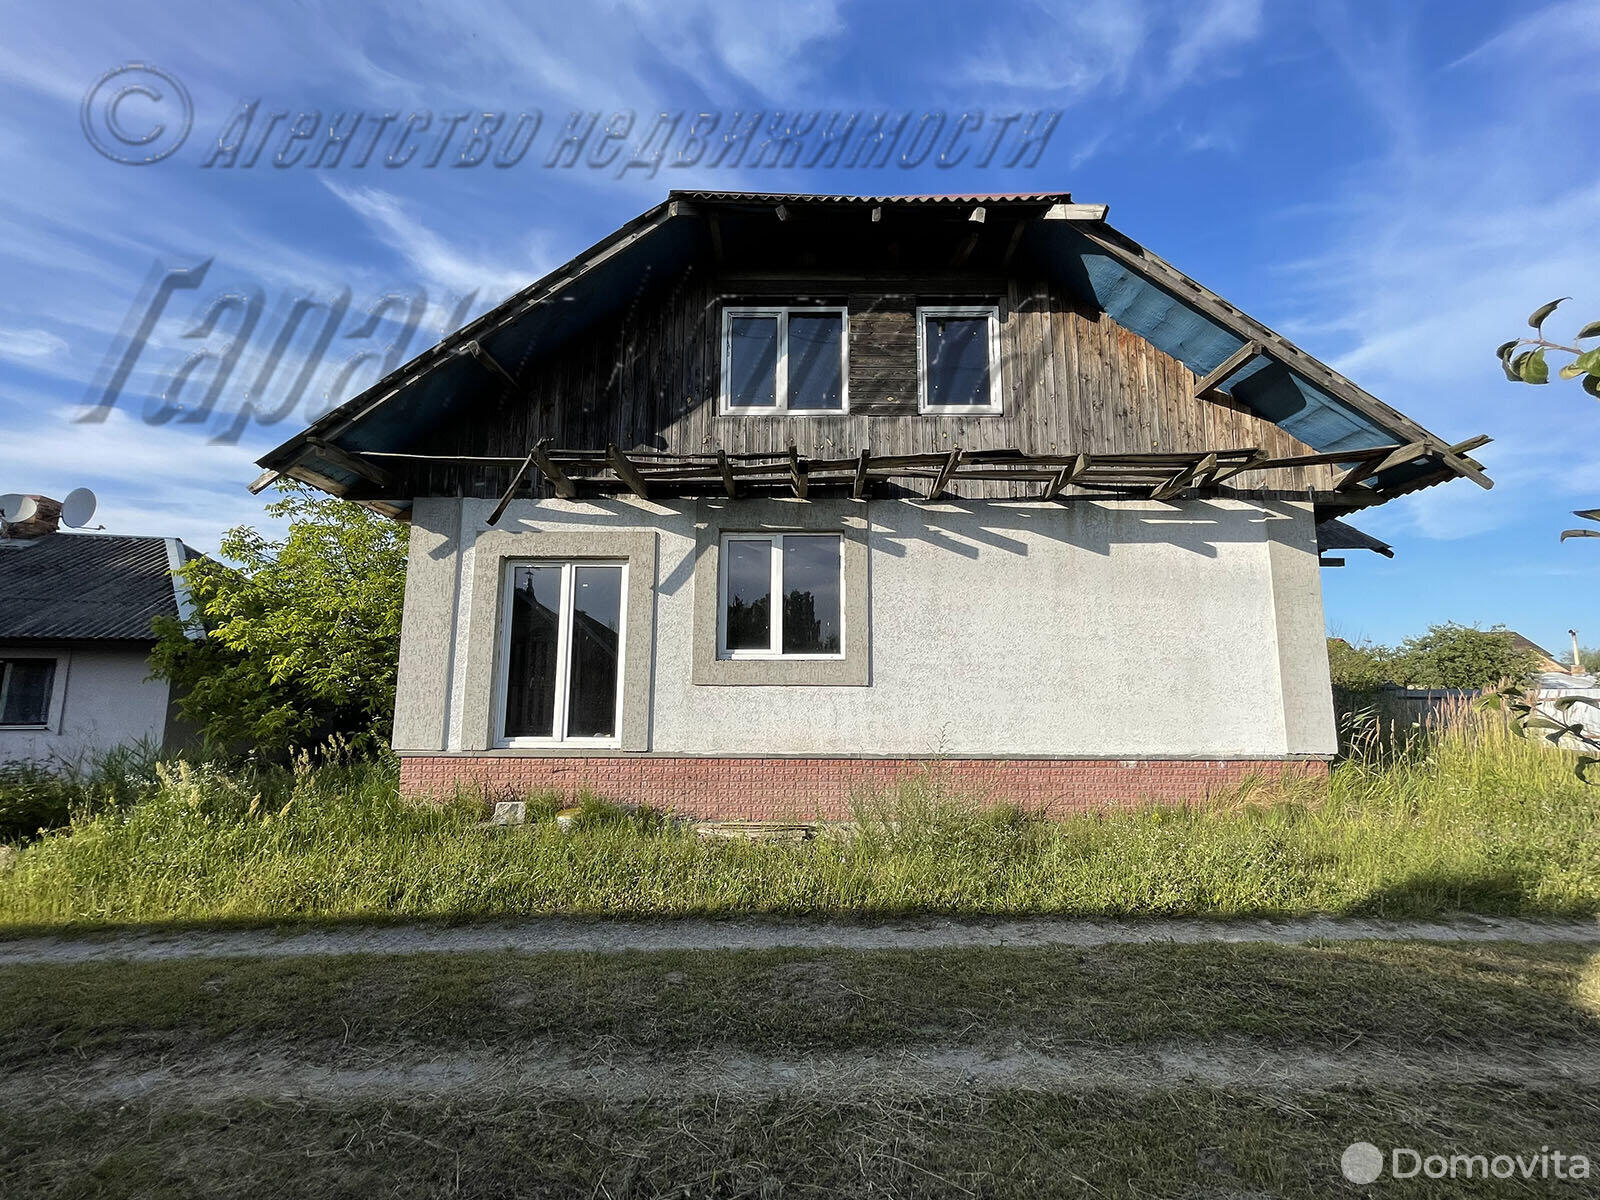 Продать 2-этажный дом в Бресте, Брестская область ул. Свято-Афанасьевская, 69900USD, код 626132 - фото 3